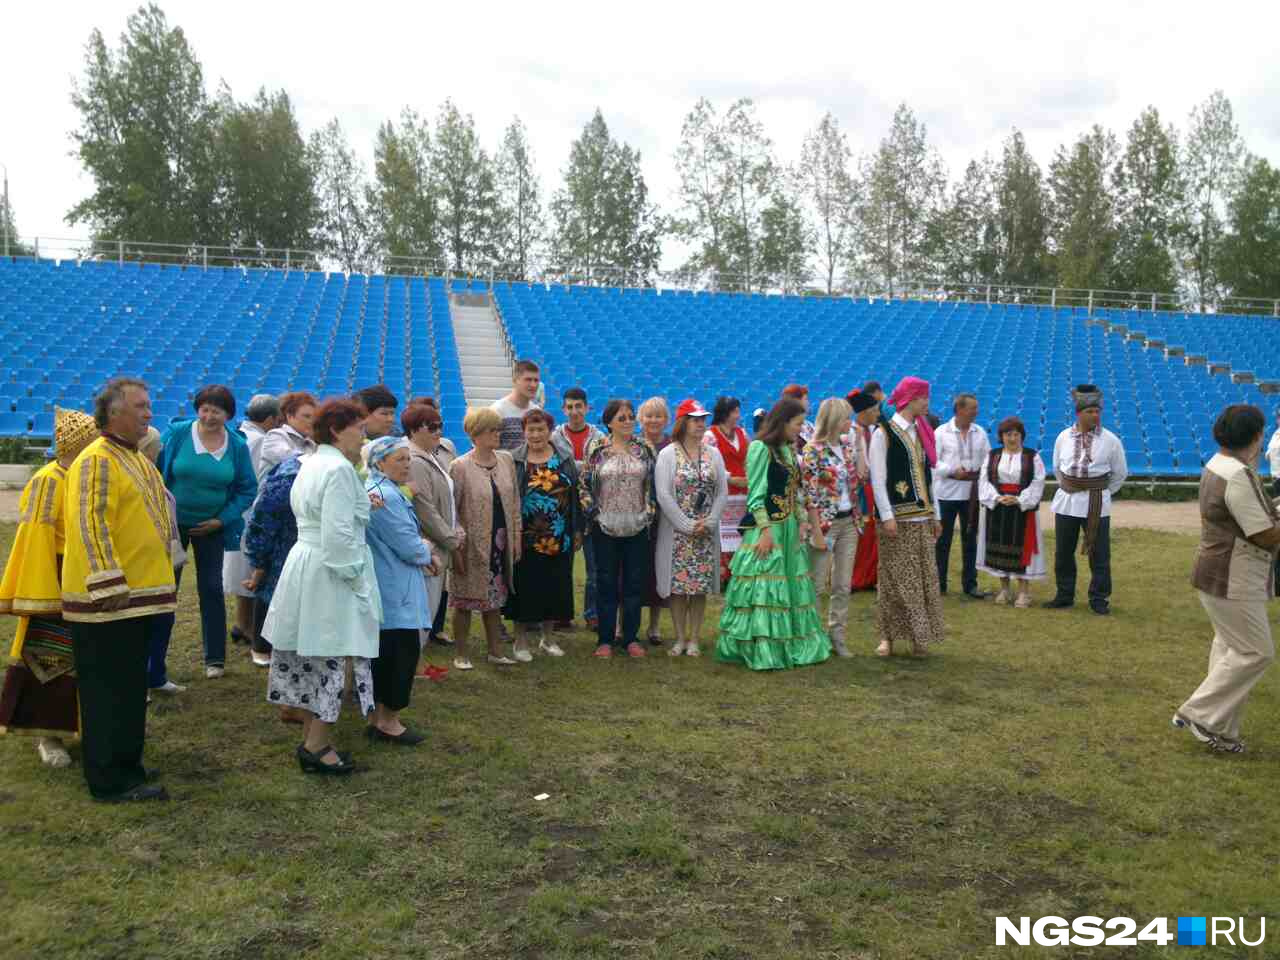 Горожане в ярких национальных костюмах готовятся встречать гостей 